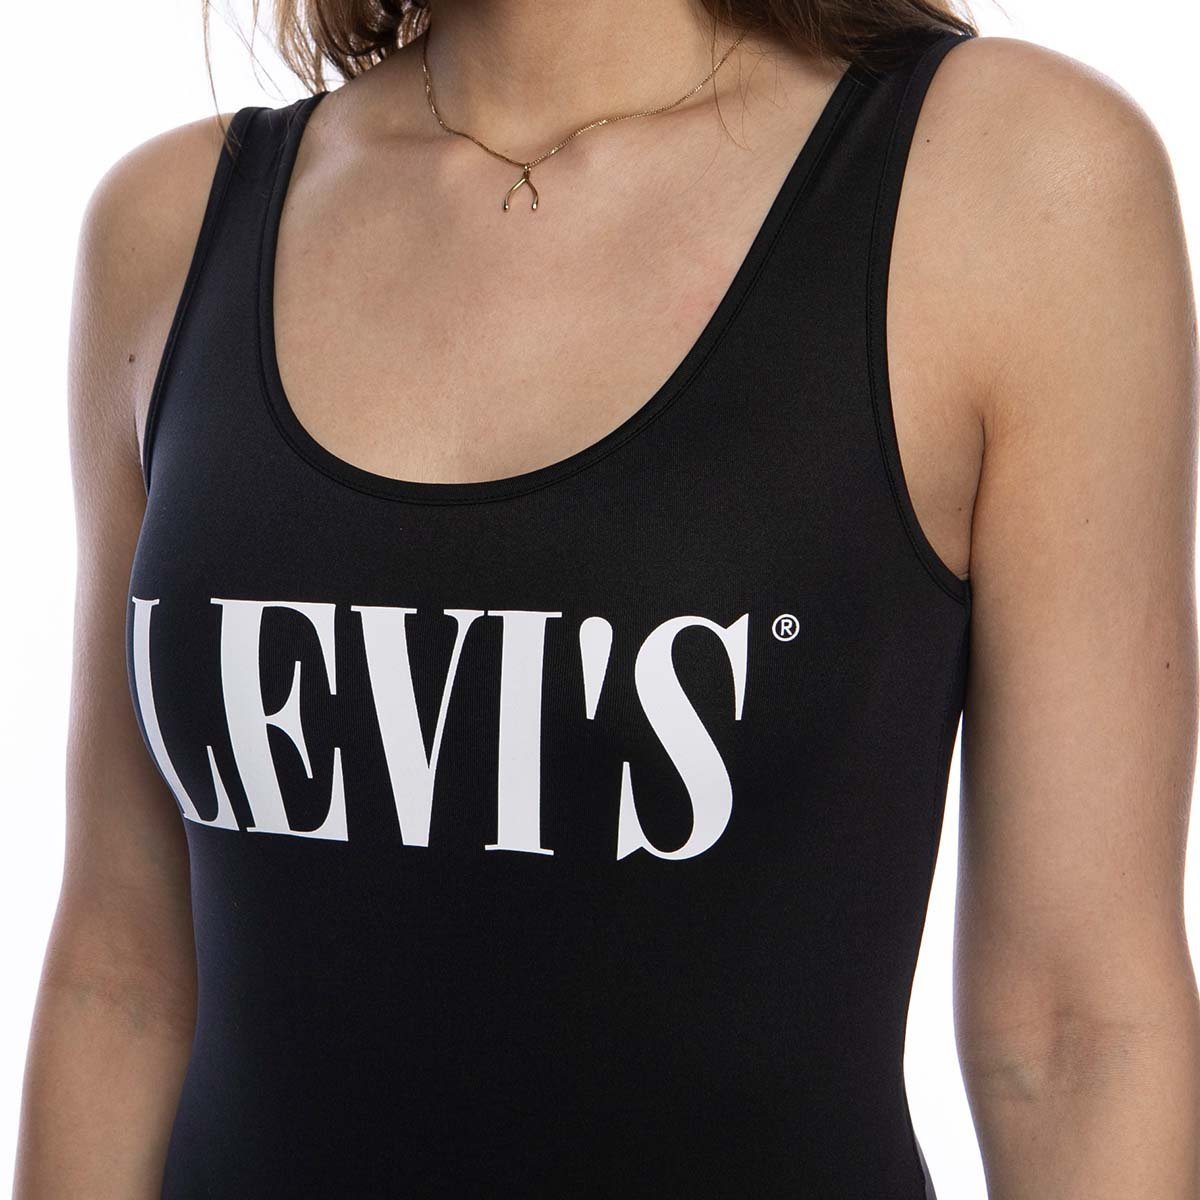 levis bodysuit black